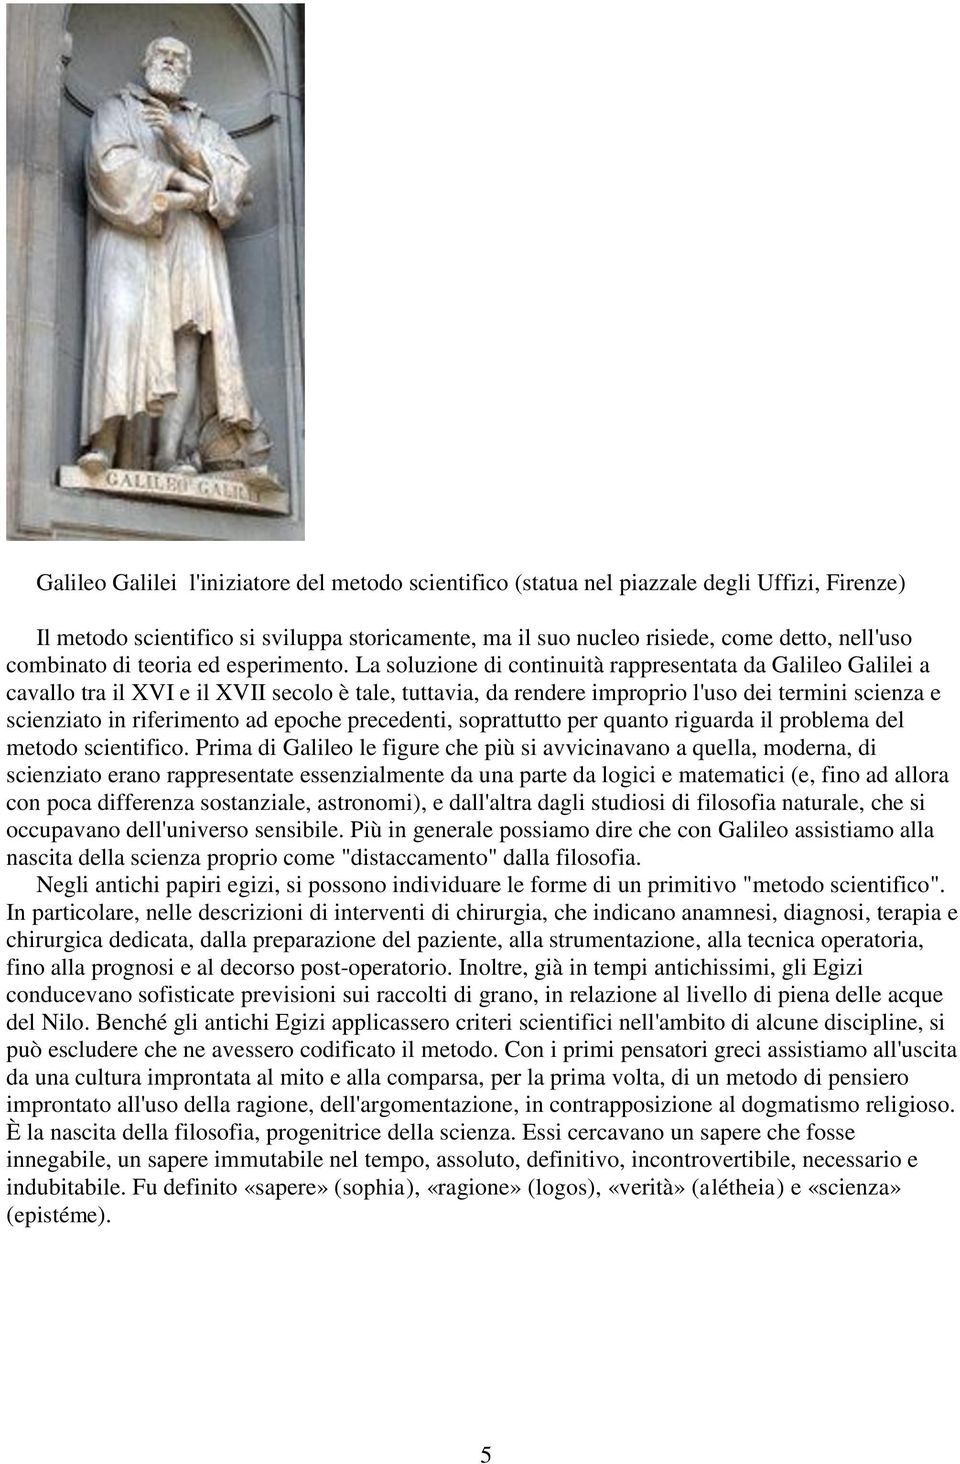 La soluzione di continuità rappresentata da Galileo Galilei a cavallo tra il XVI e il XVII secolo è tale, tuttavia, da rendere improprio l'uso dei termini scienza e scienziato in riferimento ad